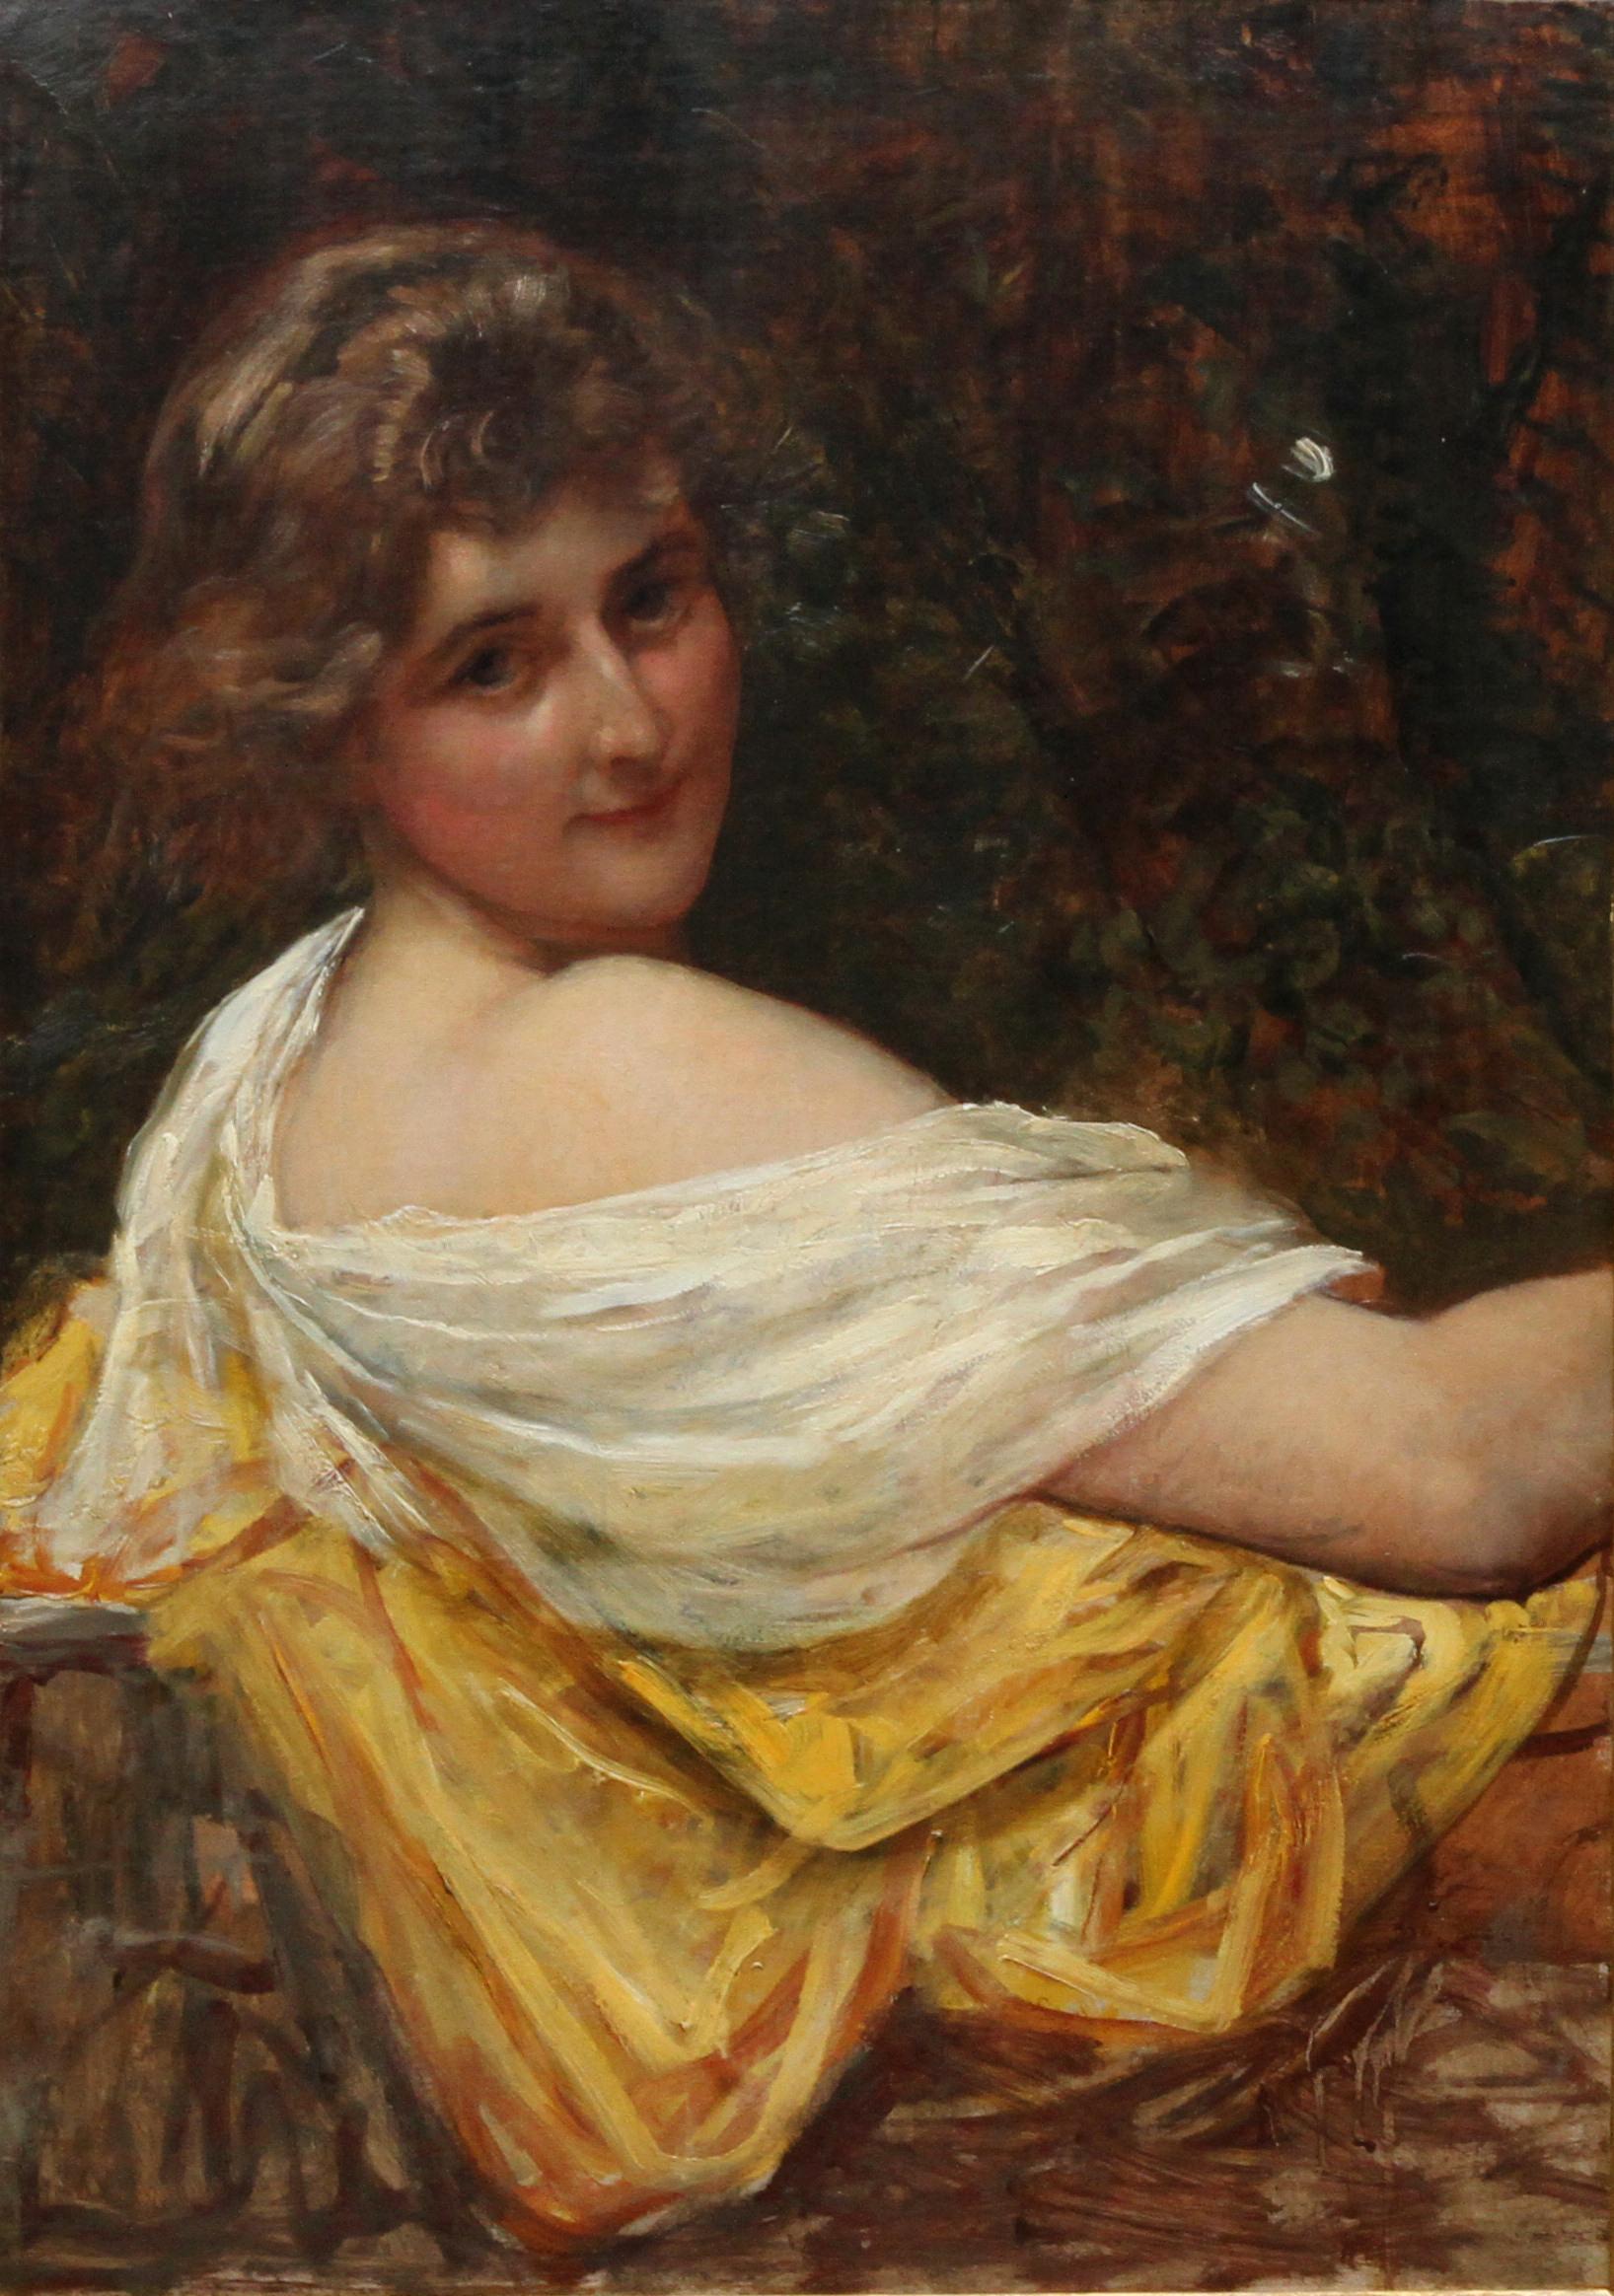 Porträt einer jungen Dame in einem gelben Kleid – britisches viktorianisches Ölgemälde  – Painting von Sir William Blake Richmond